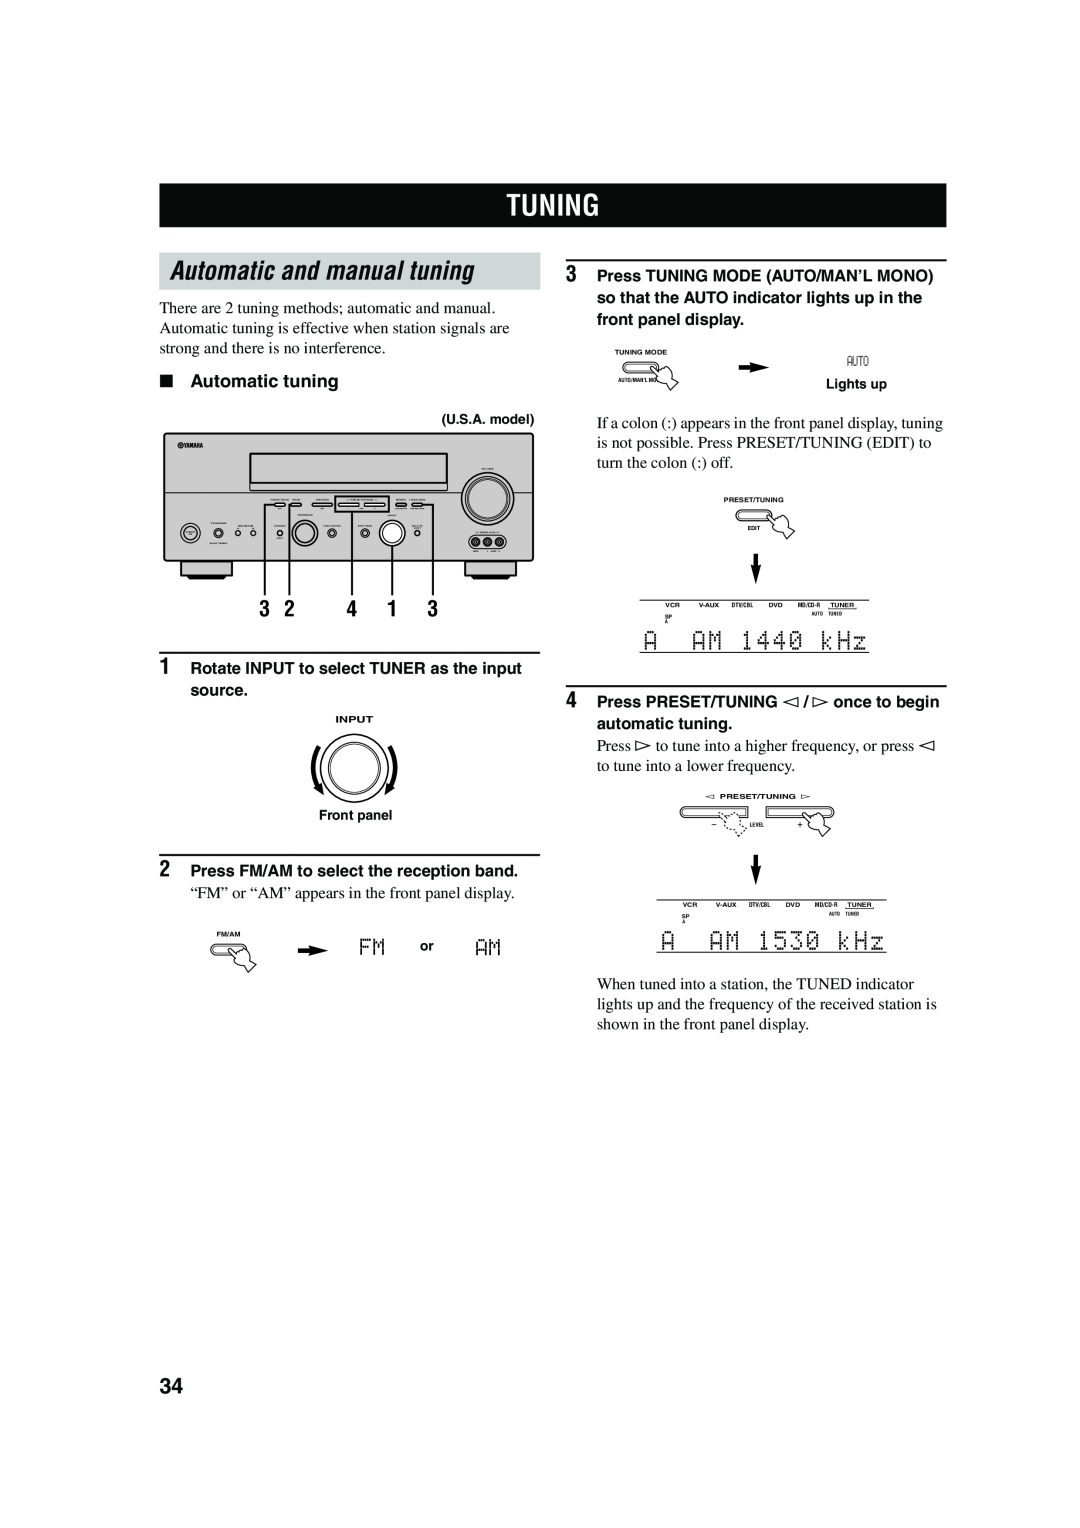 Yamaha RX-V550 Tuning, Automatic and manual tuning, 1A-AAM11440kkHz, 1A-AAM11530kkHz, FM or AM, Automatic tuning 